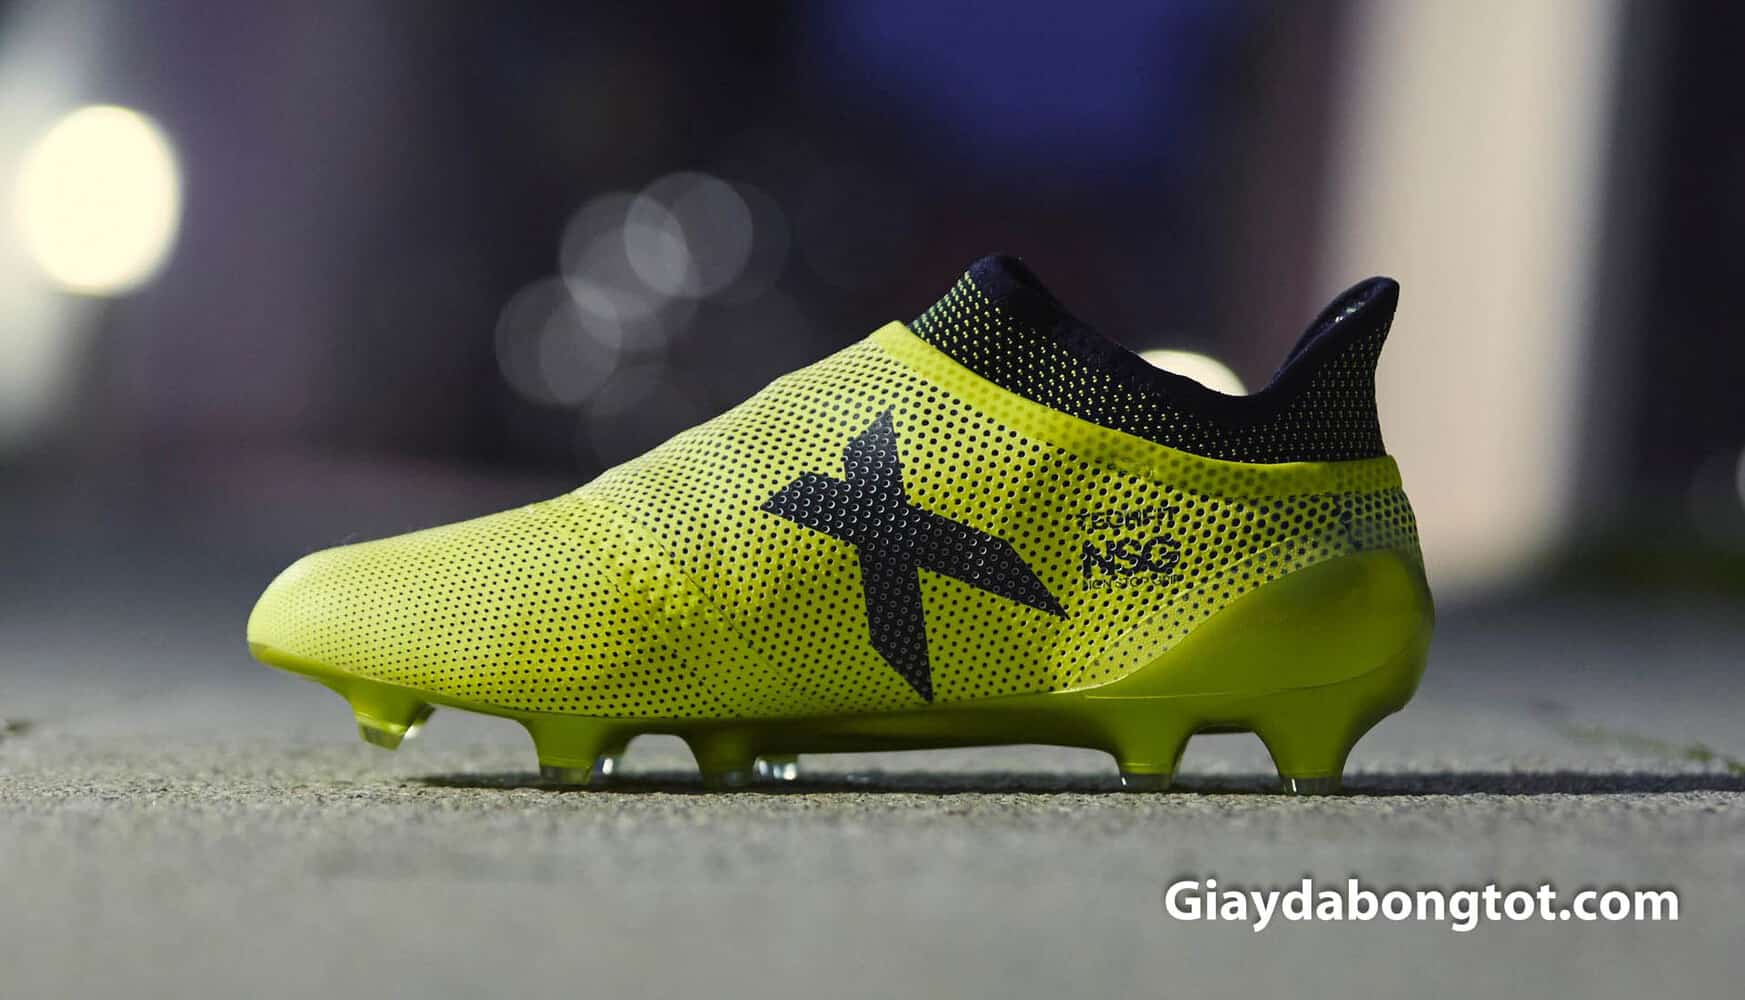 Công nghệ NSG (Nonstop Grip) áp dụng trên các mẫu giày bóng đá Adidas cao cấp